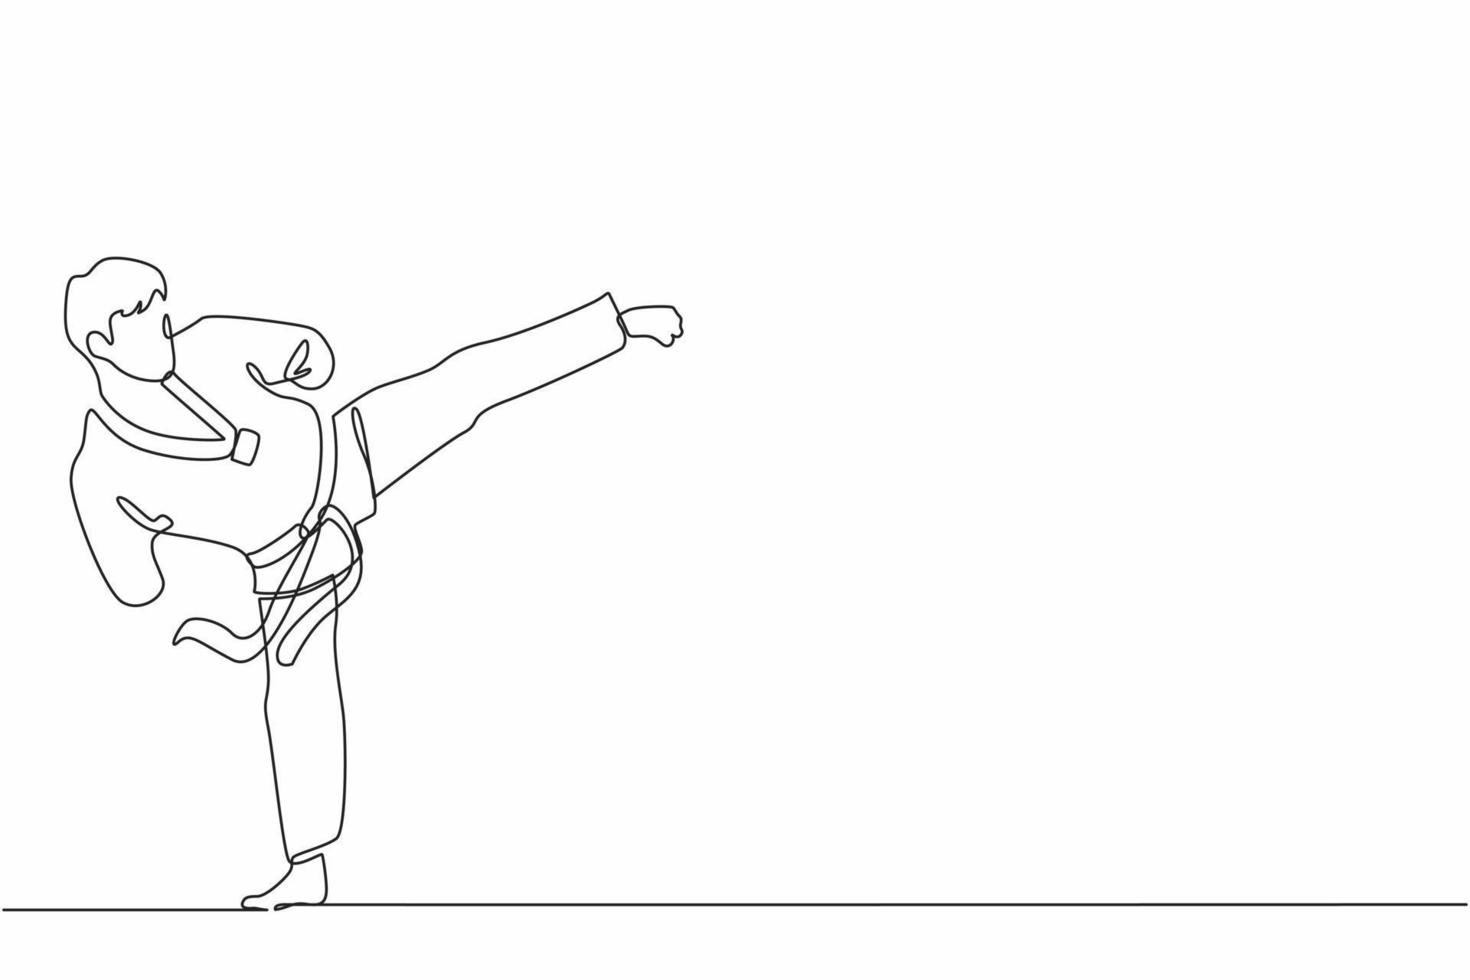 enkele doorlopende lijntekening mannelijke atleet met een handicap die taekwondo beoefent. sportman doet schoppen pose in sporttoernooi. dynamische één lijn trekken grafisch ontwerp vectorillustratie vector